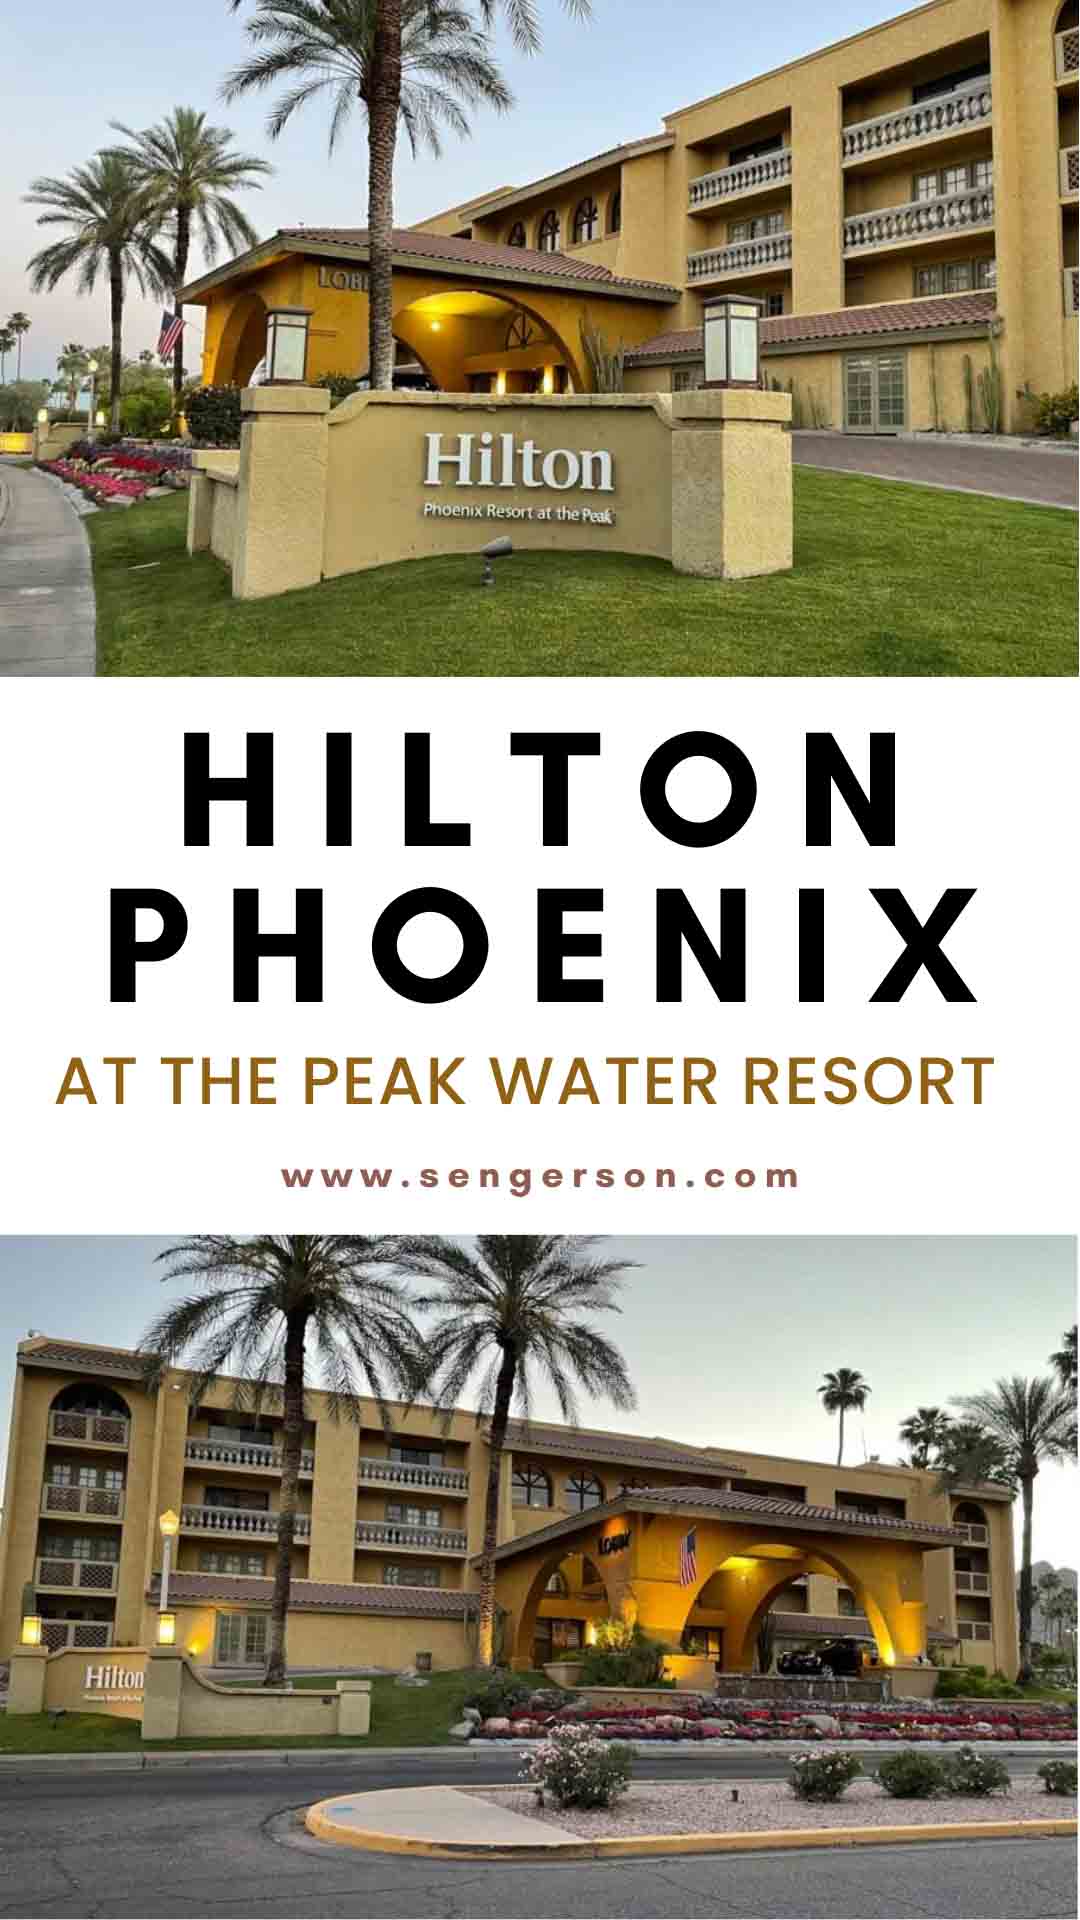 18622 hilton phoenix at the peak water resort review 1